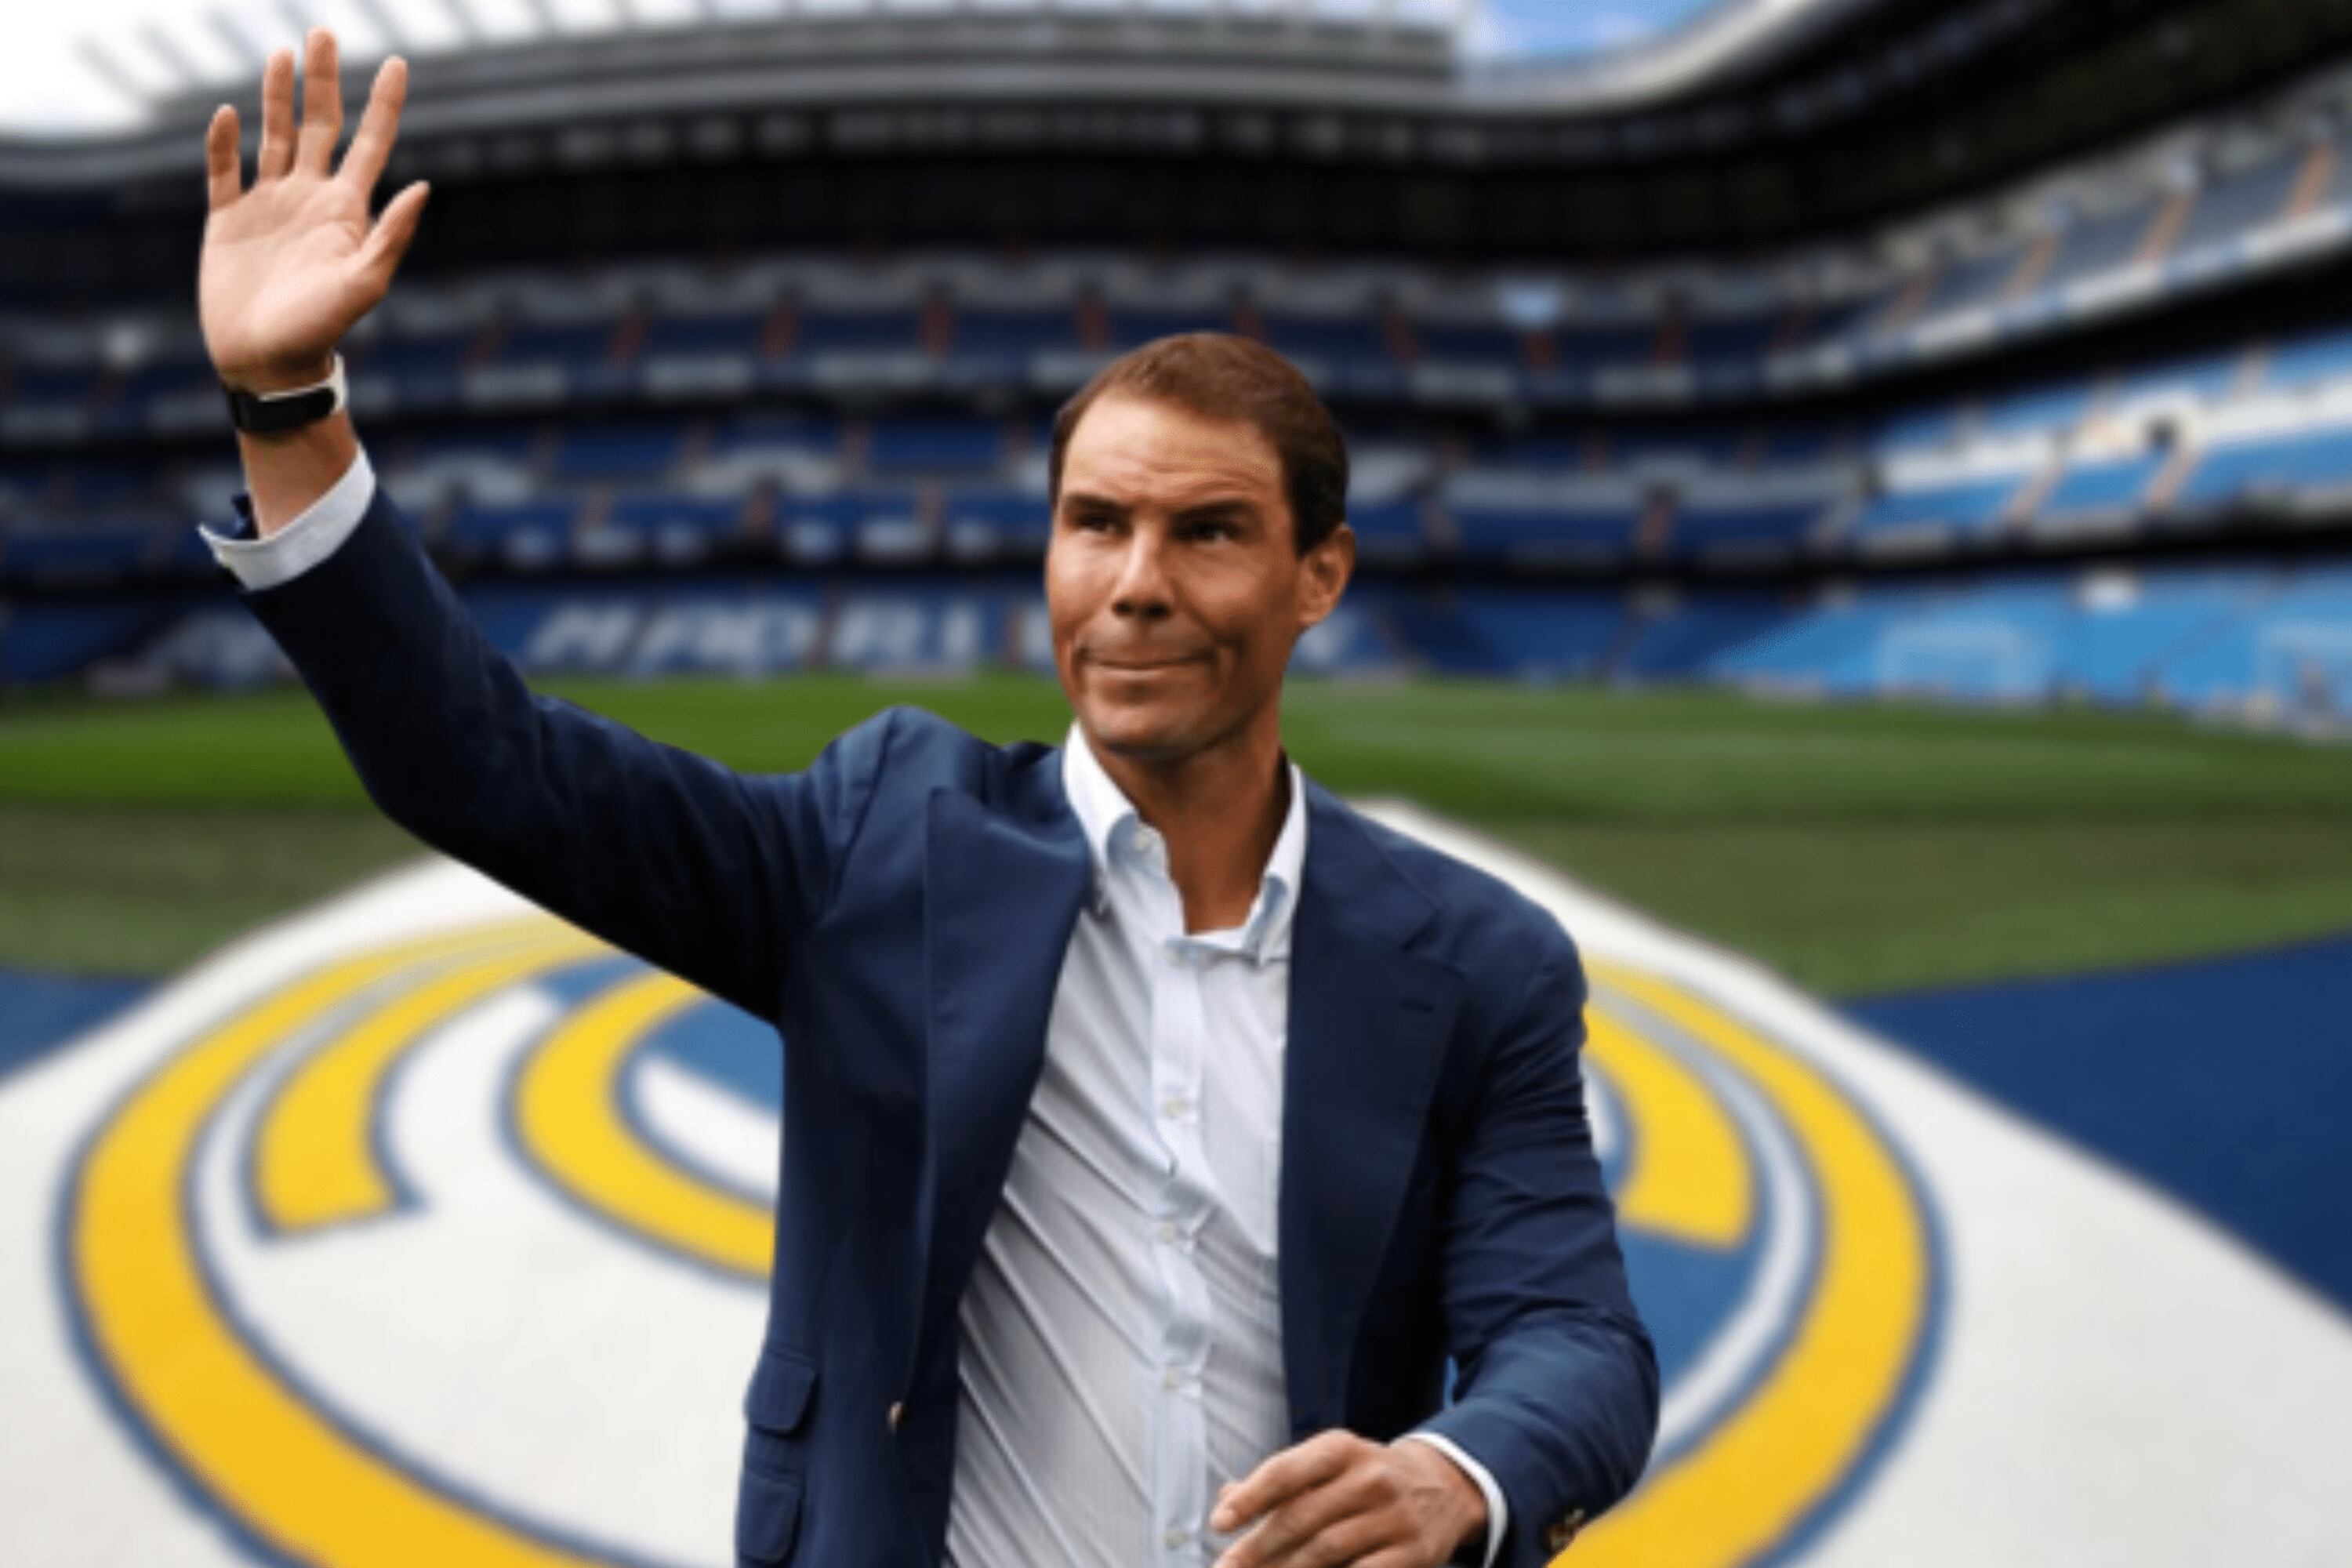 ¿Qué necesita Rafael Nadal para ser presidente del Real Madrid?